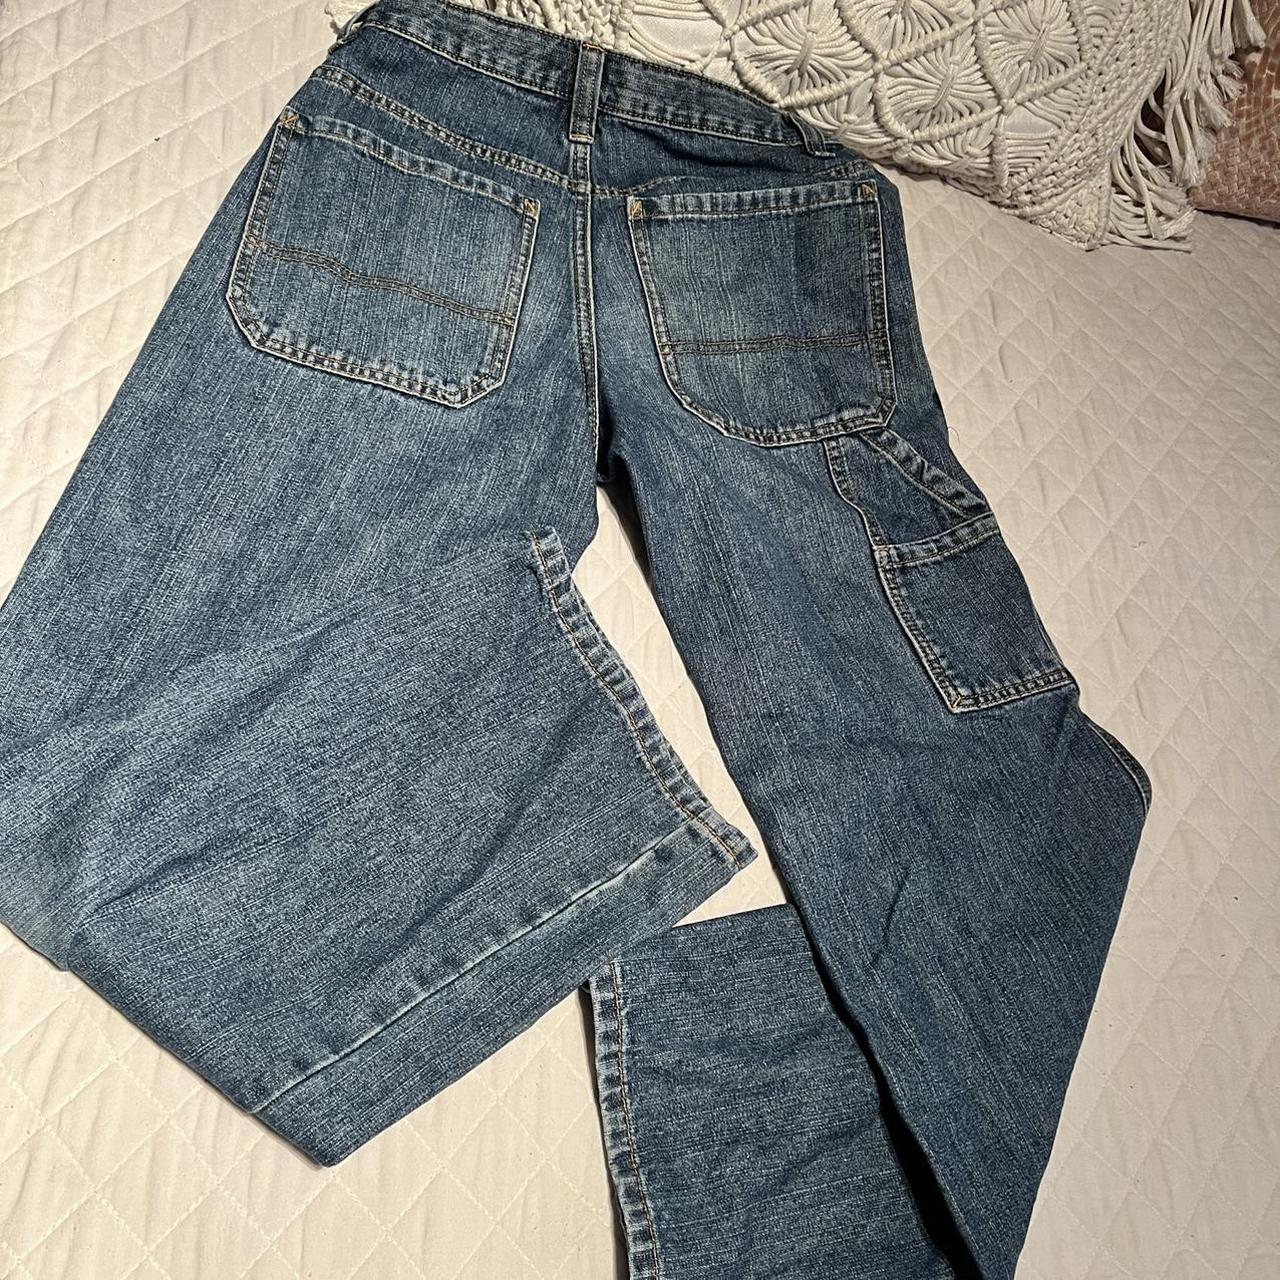 Loose fit jeans - Side pockets- kids carpenter pants... - Depop